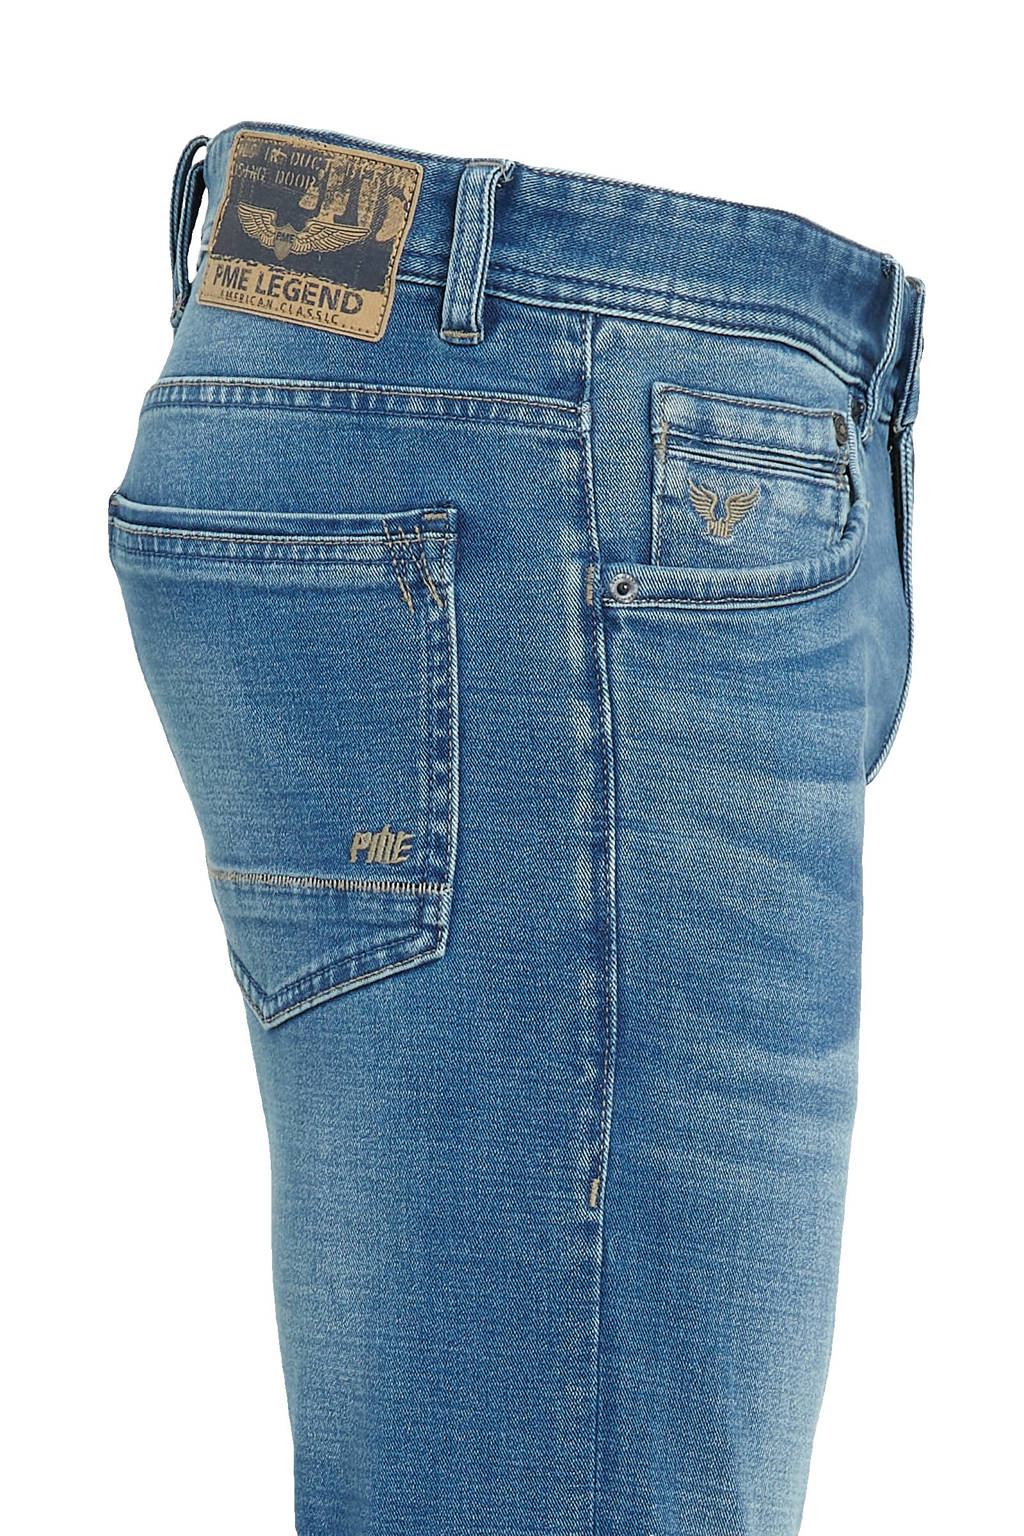 PME Legend slim fit jeans blue soft Tailwheel mid Union | River